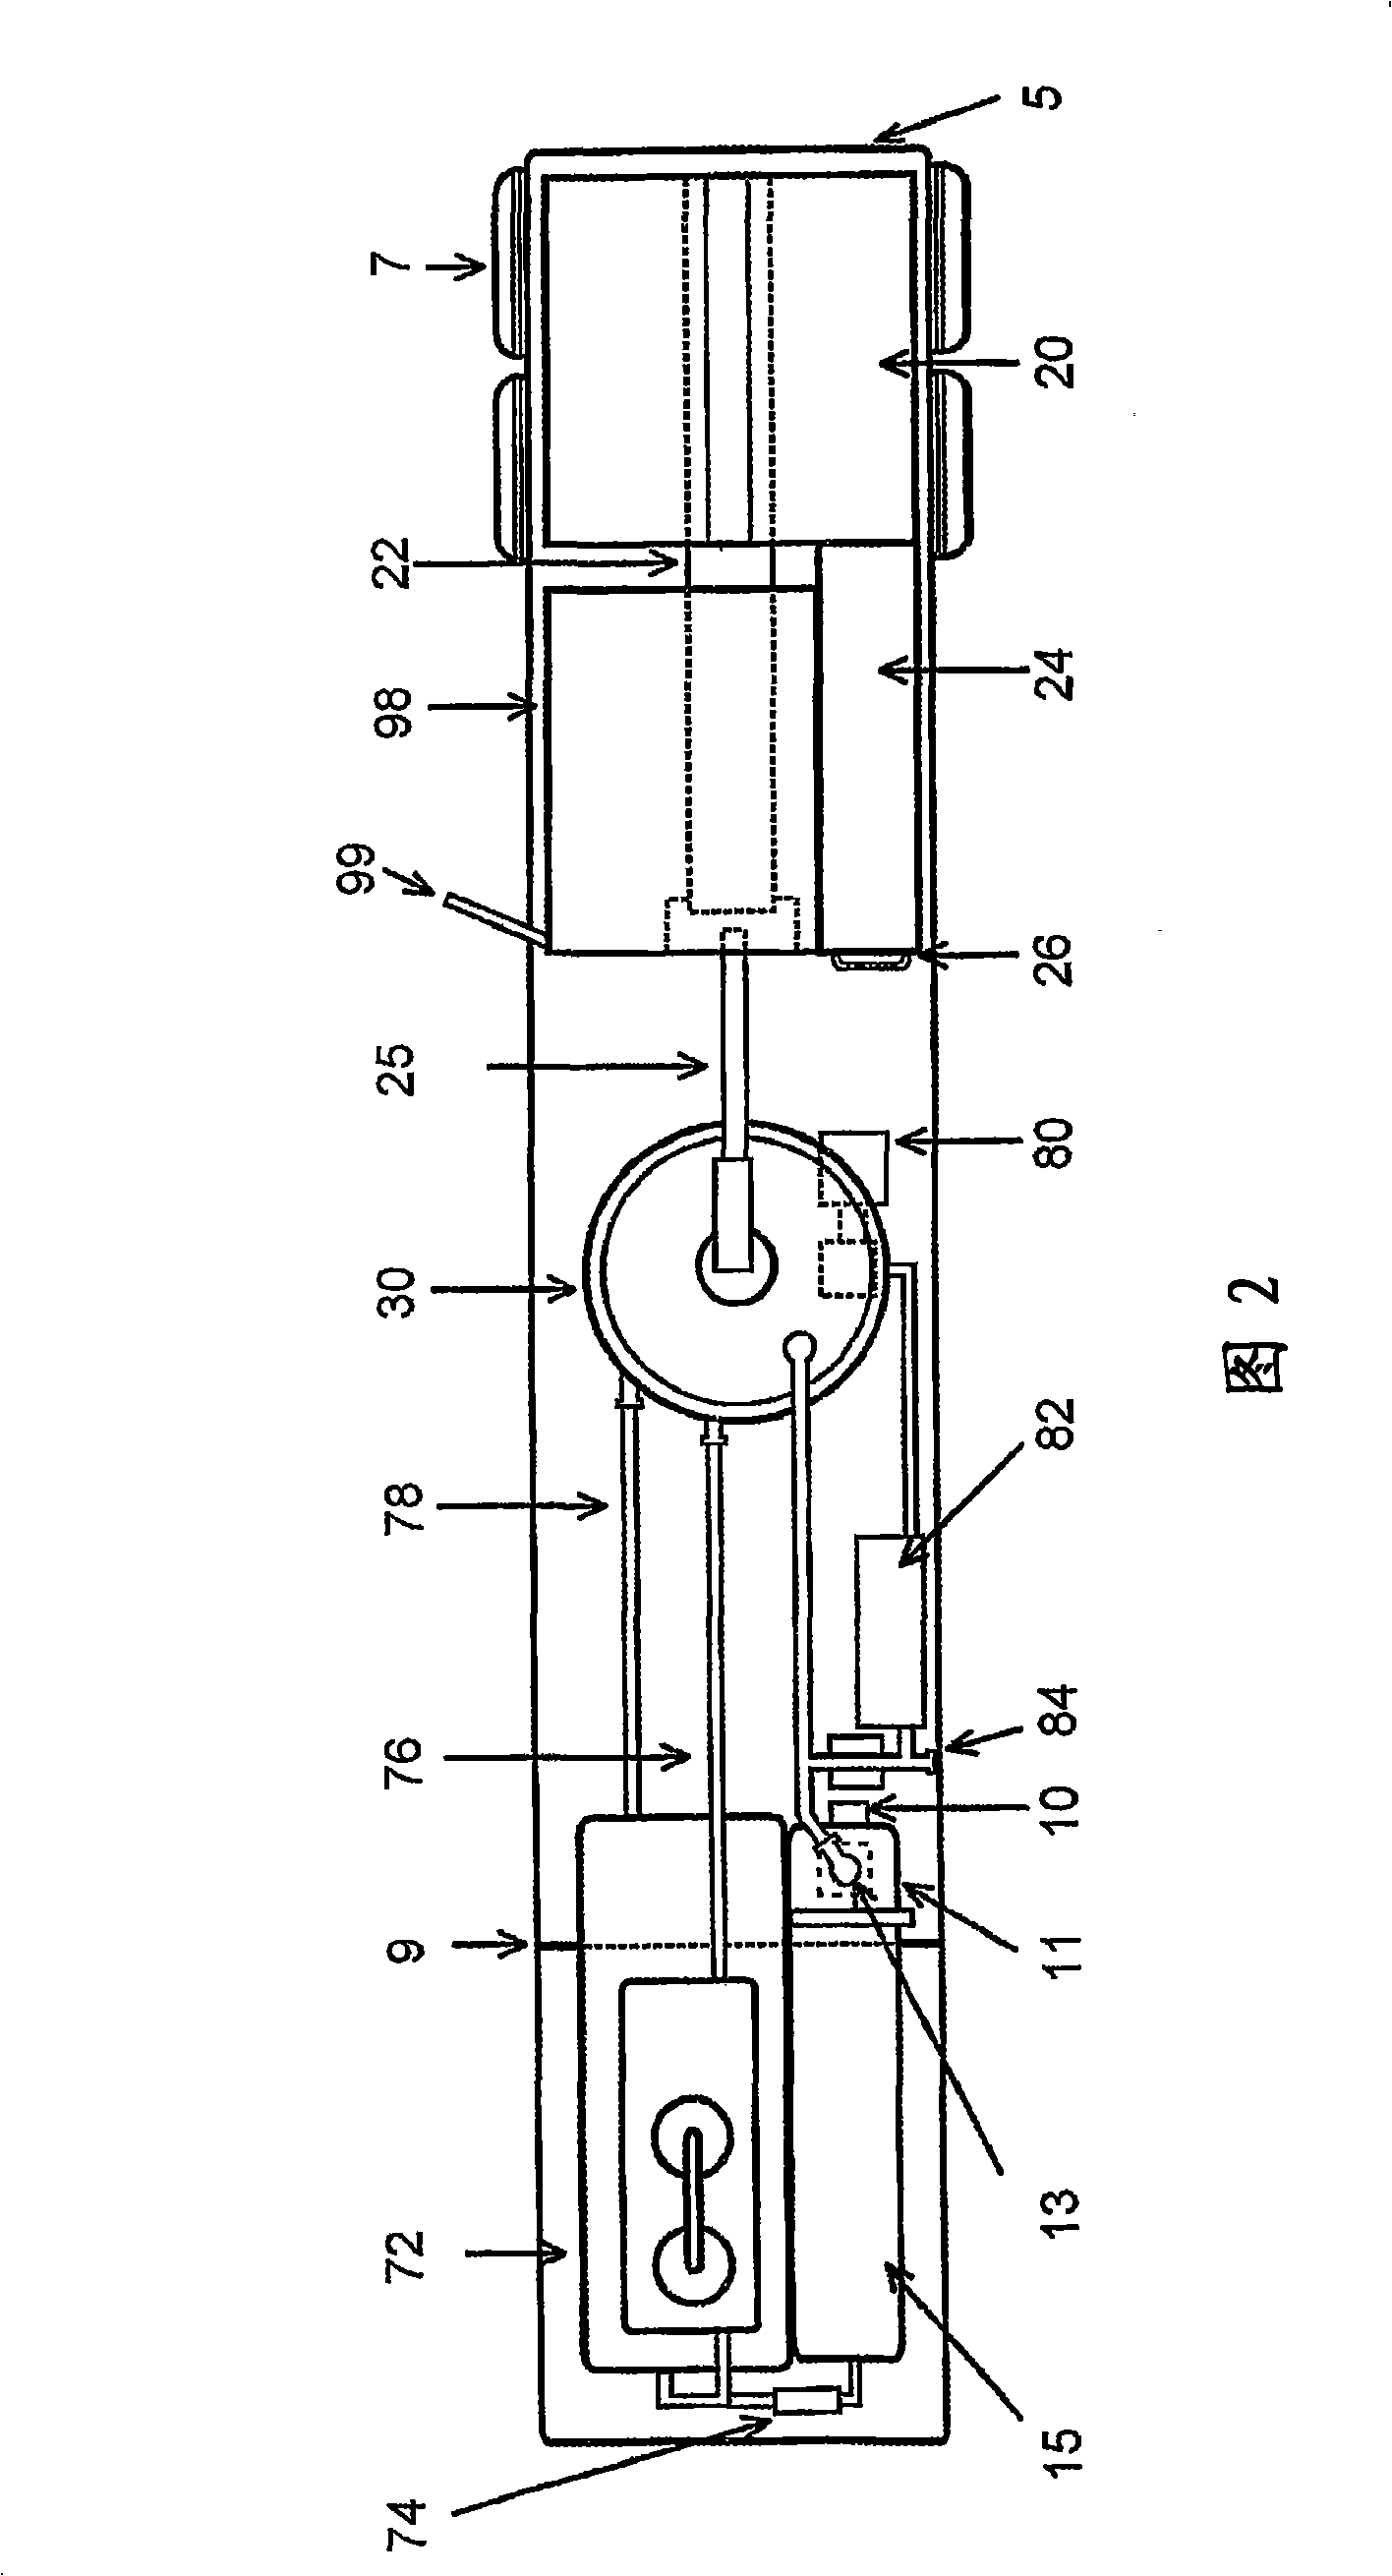 Asphalt reactor and blending system